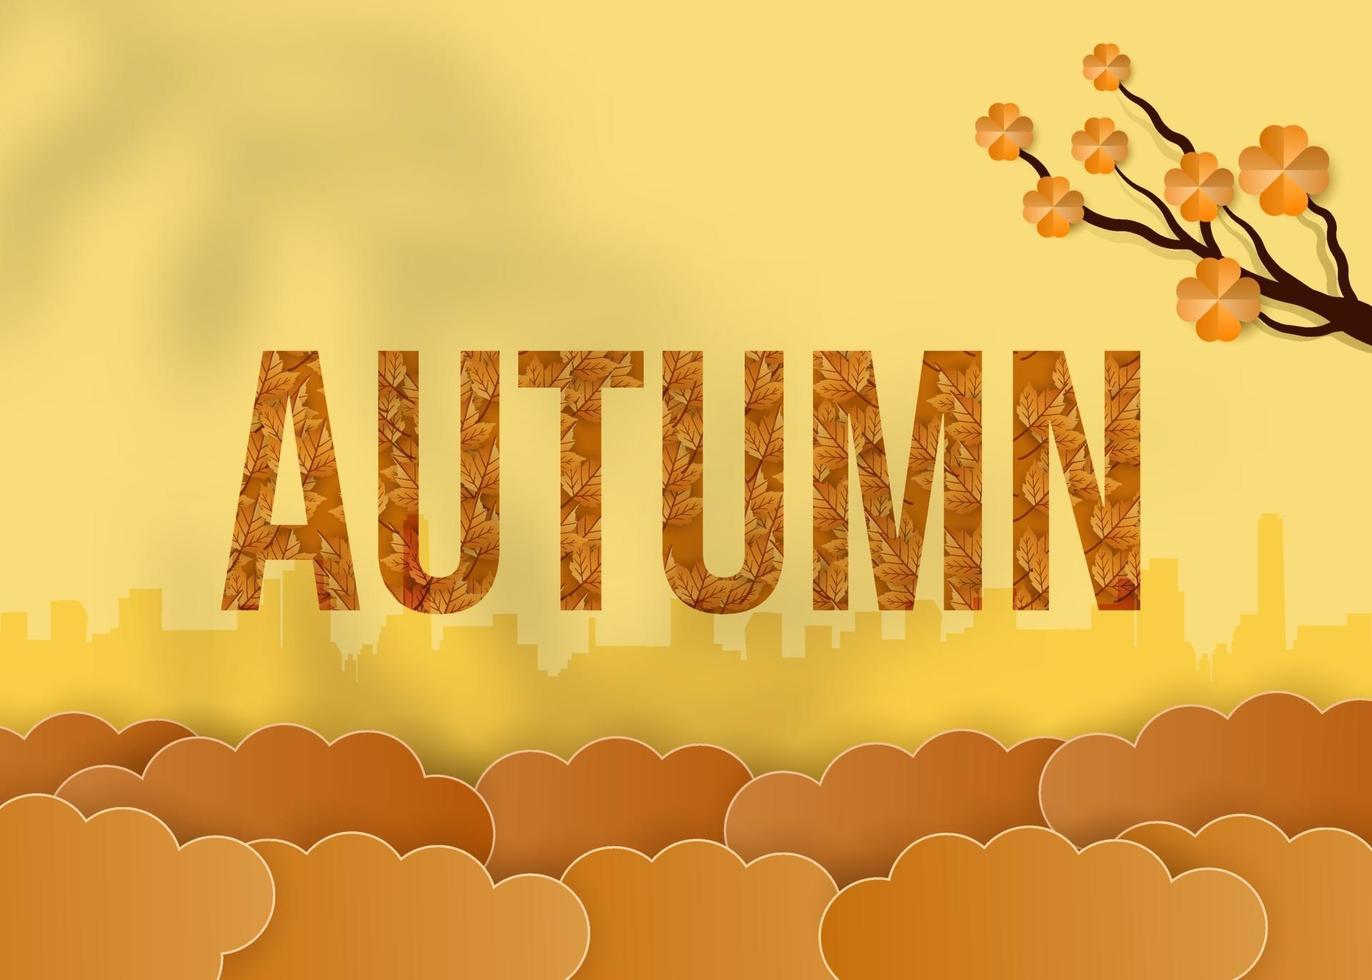 Autumn season vector background